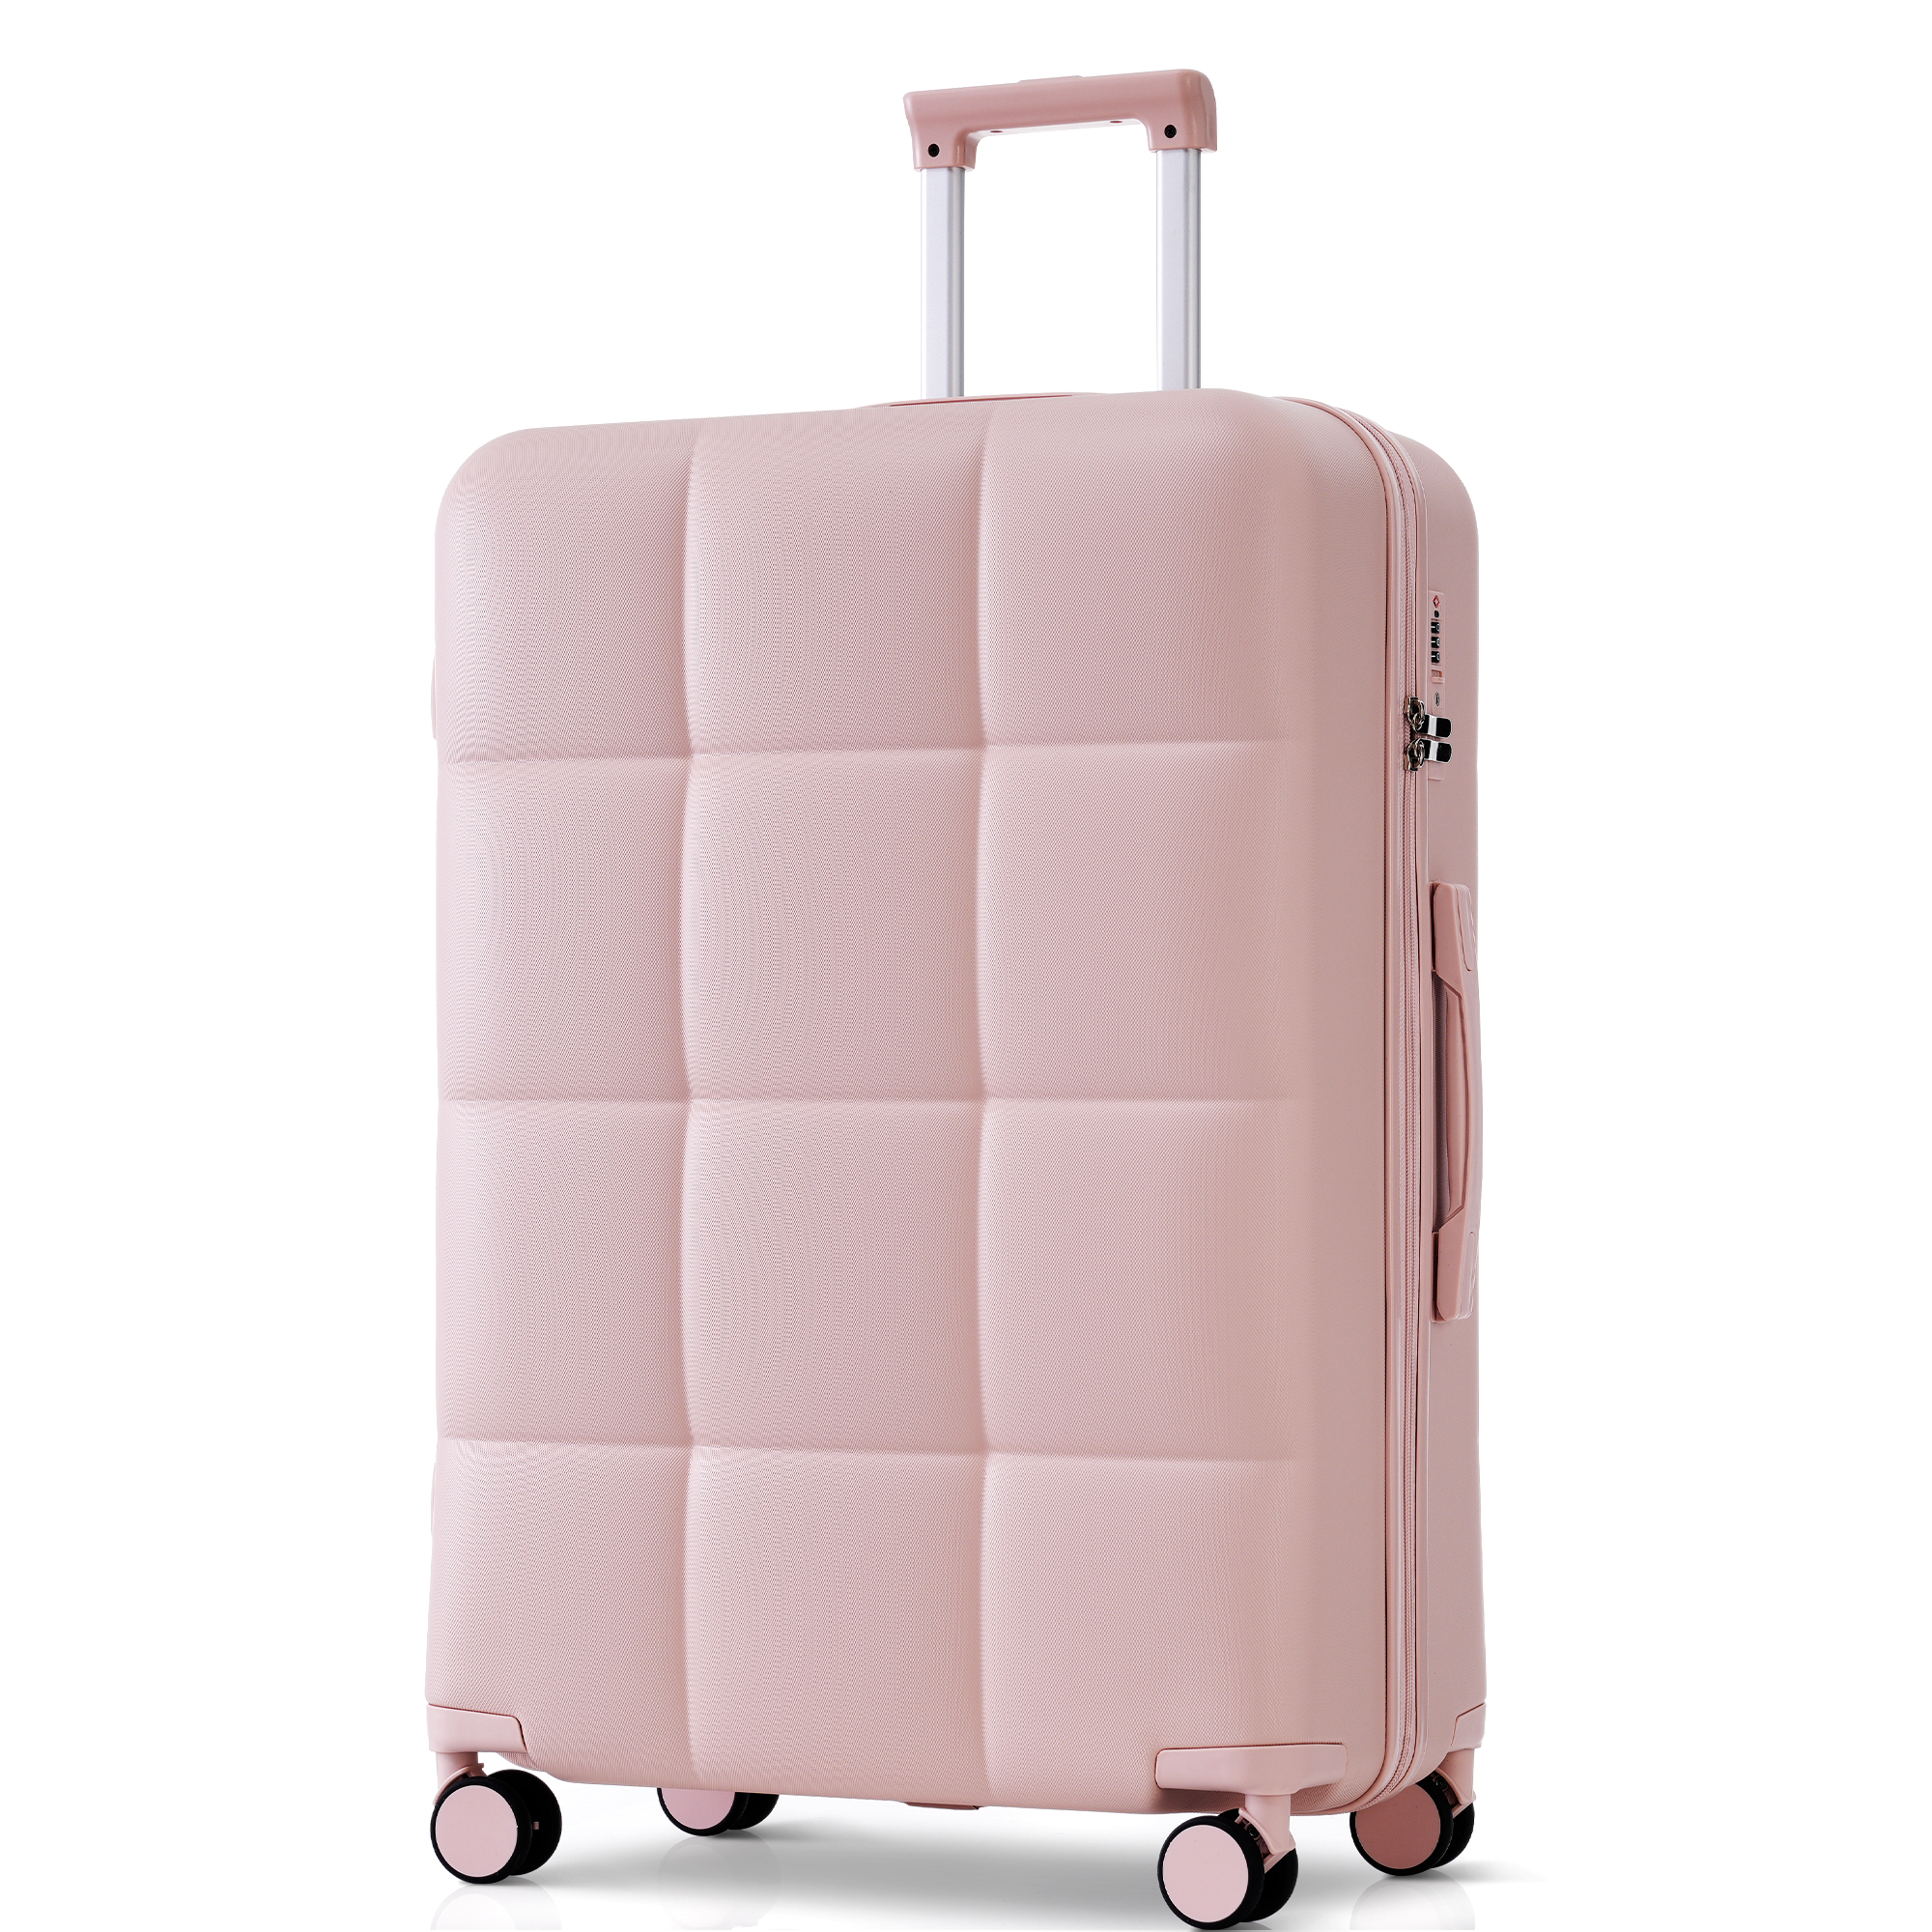 予約販売 スーツケース キャリーバッグ キャリーケース Mサイズ 中型 超軽量 ファスナー式 TSA...